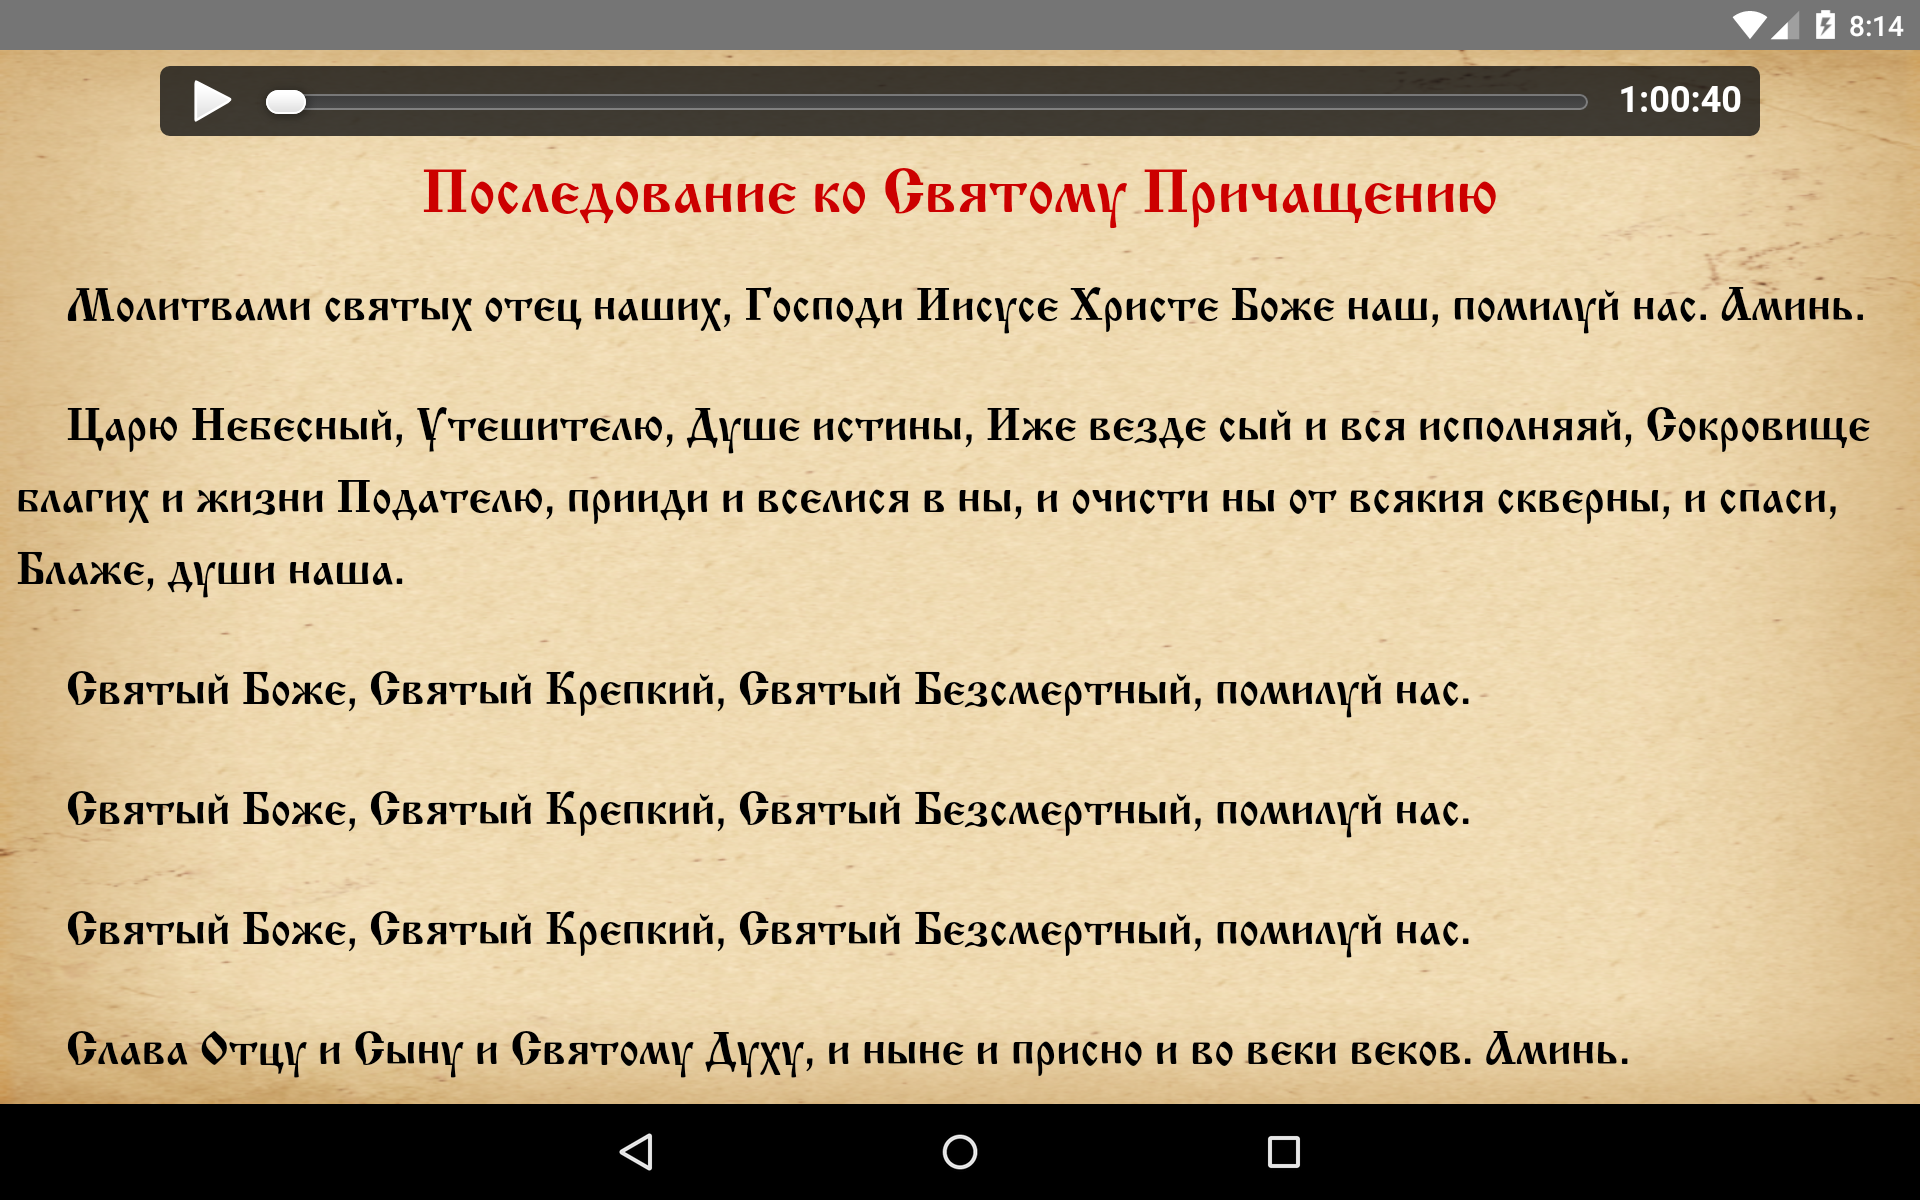 Android application Православный аудио молитвослов screenshort